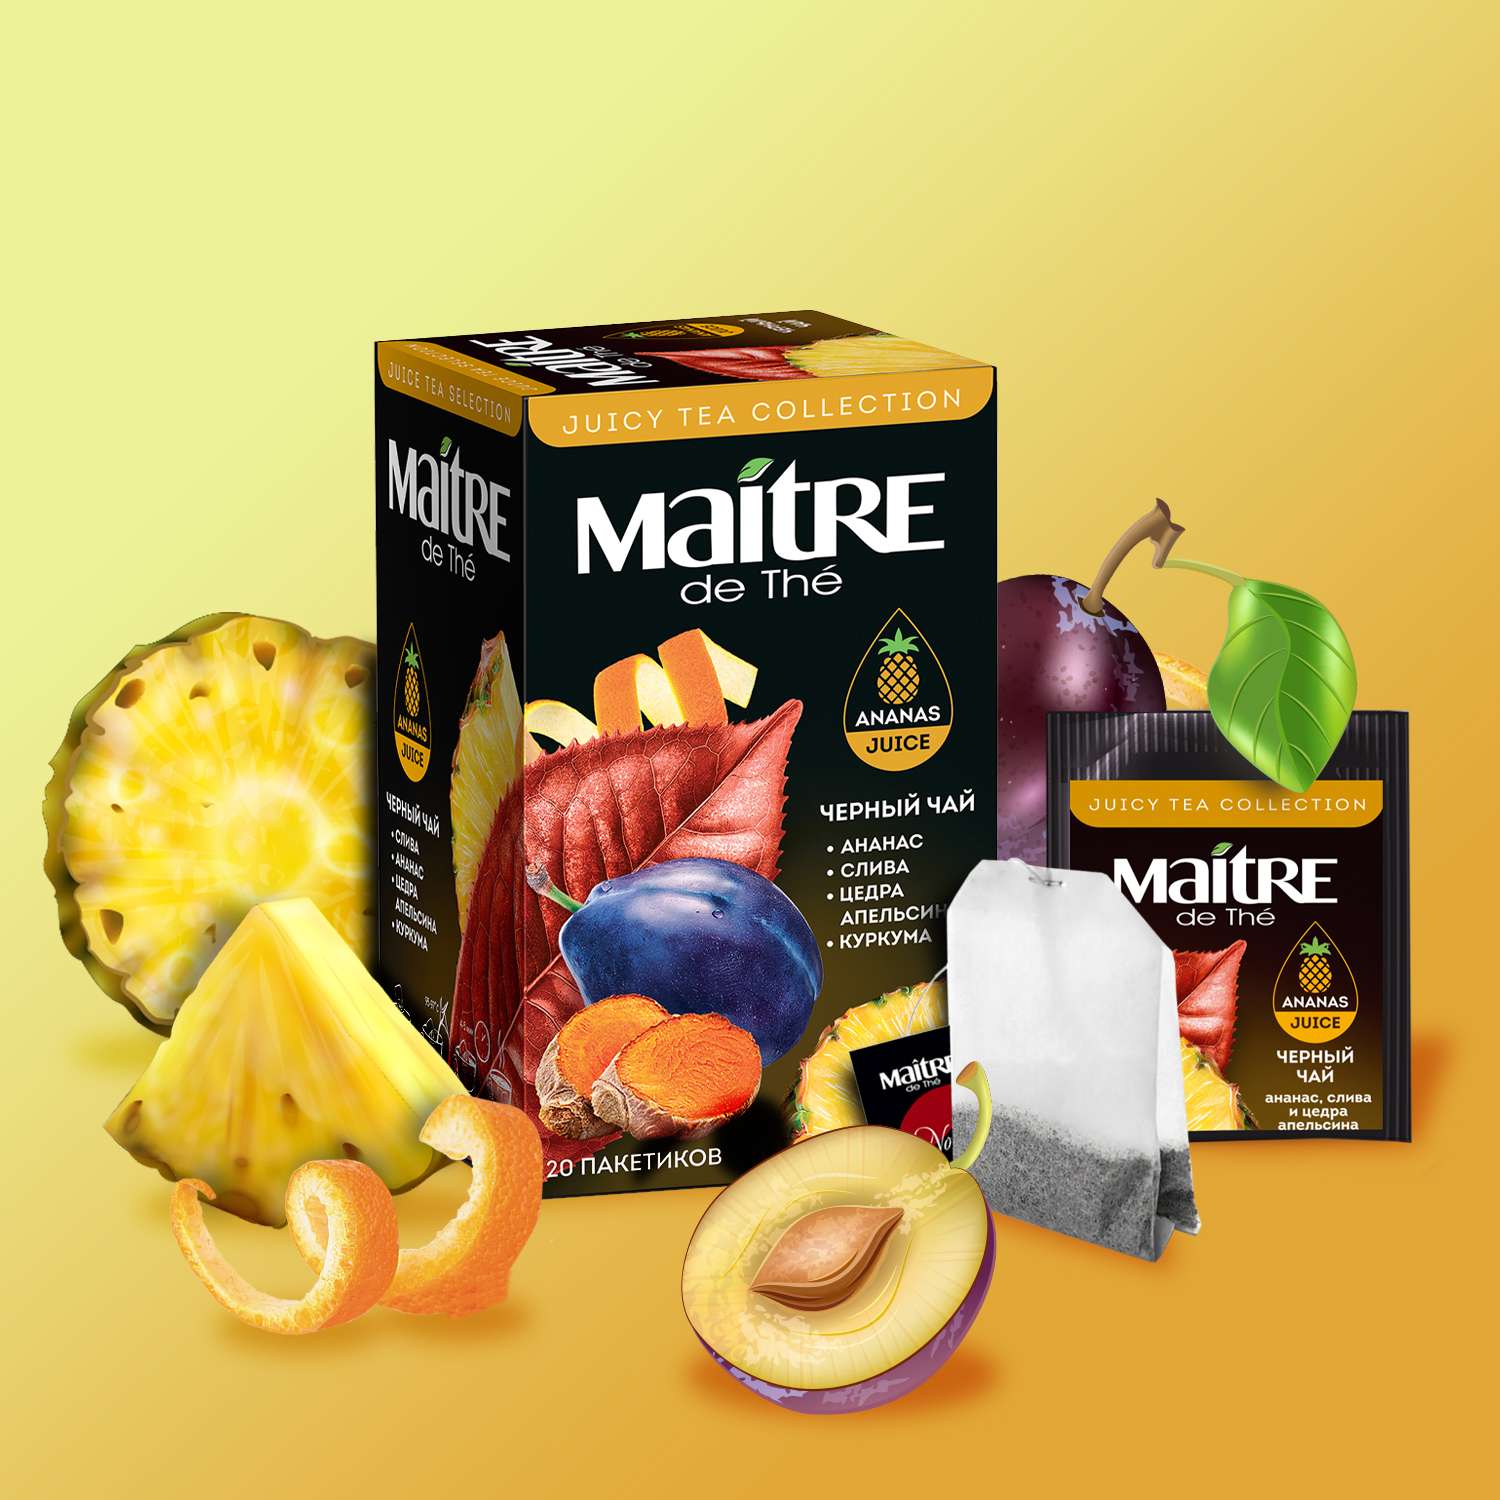 Чай в пакетиках черный Maitre de the ананас слива и цедра апельсина с добавлением концентрированного сока 20 шт 40г - фото 1